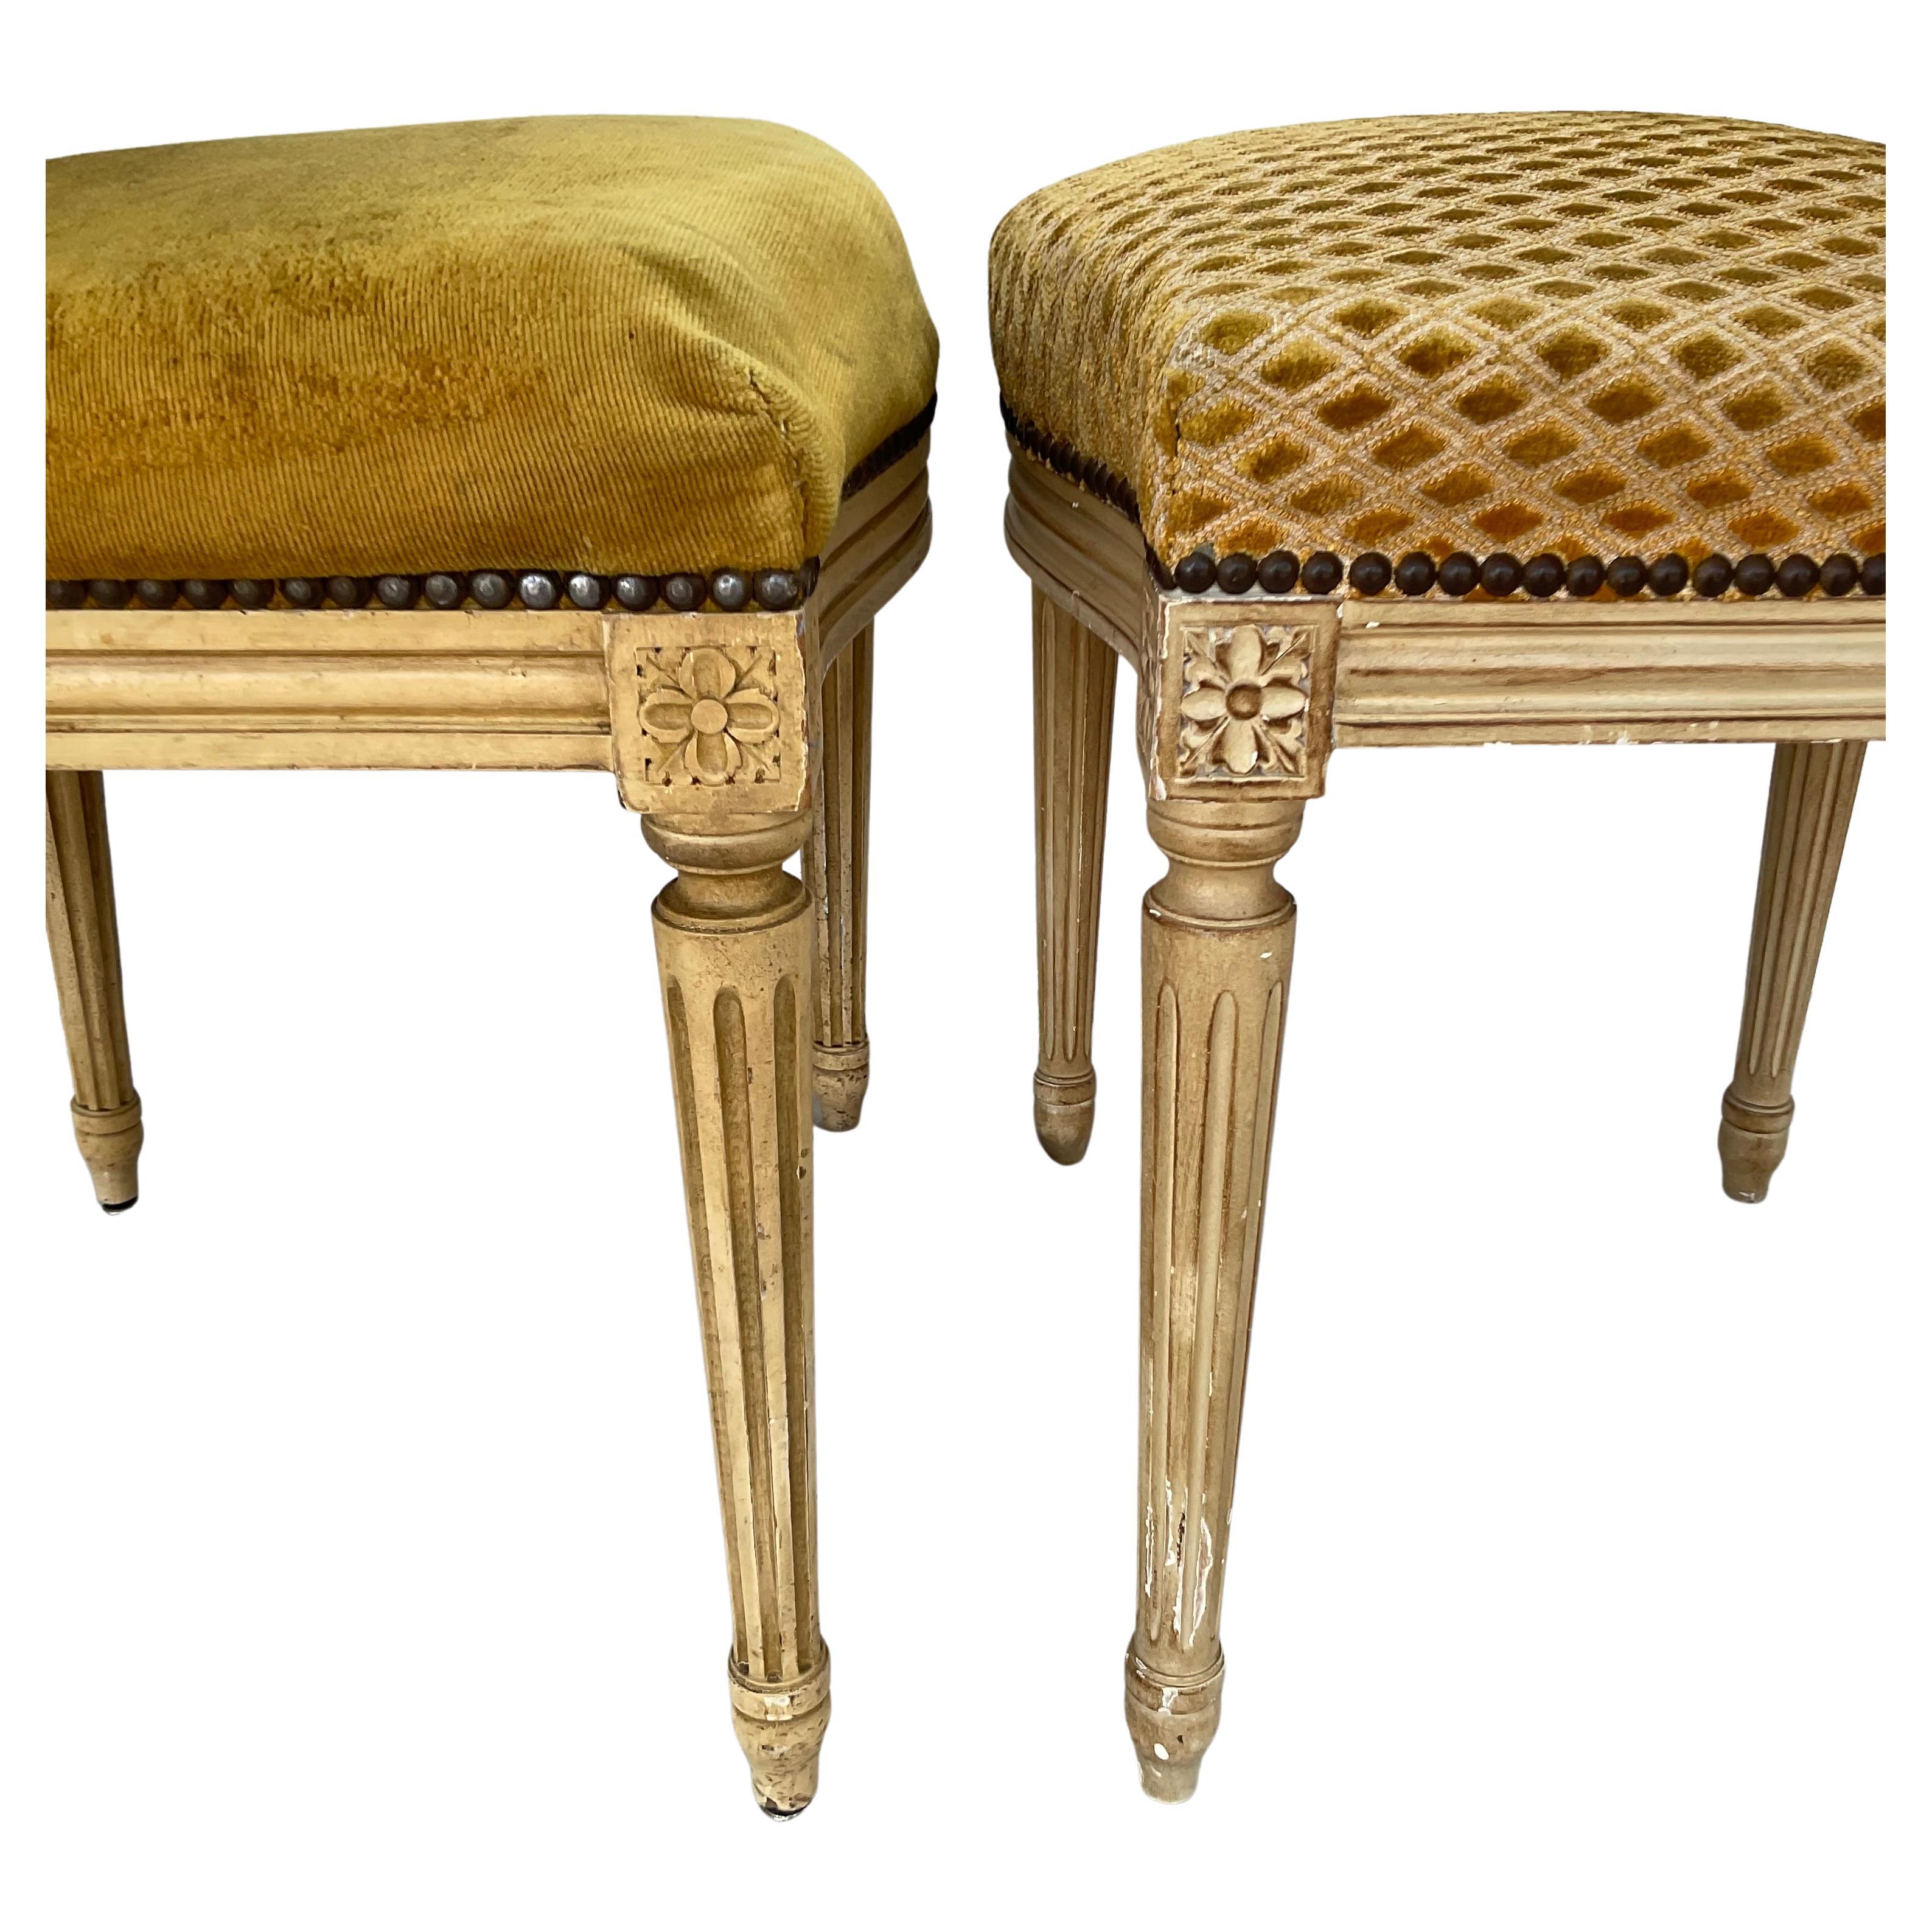 Harlekin-Satz von zehn Esszimmerstühlen im großen französischen Louis XVI-Stil. Die Stühle haben einen geformten Rahmen mit einer oval geformten Rückenlehne, die in einem cremefarbenen Lack lackiert ist. Die Rahmen sind mit gold- und cremefarbenem